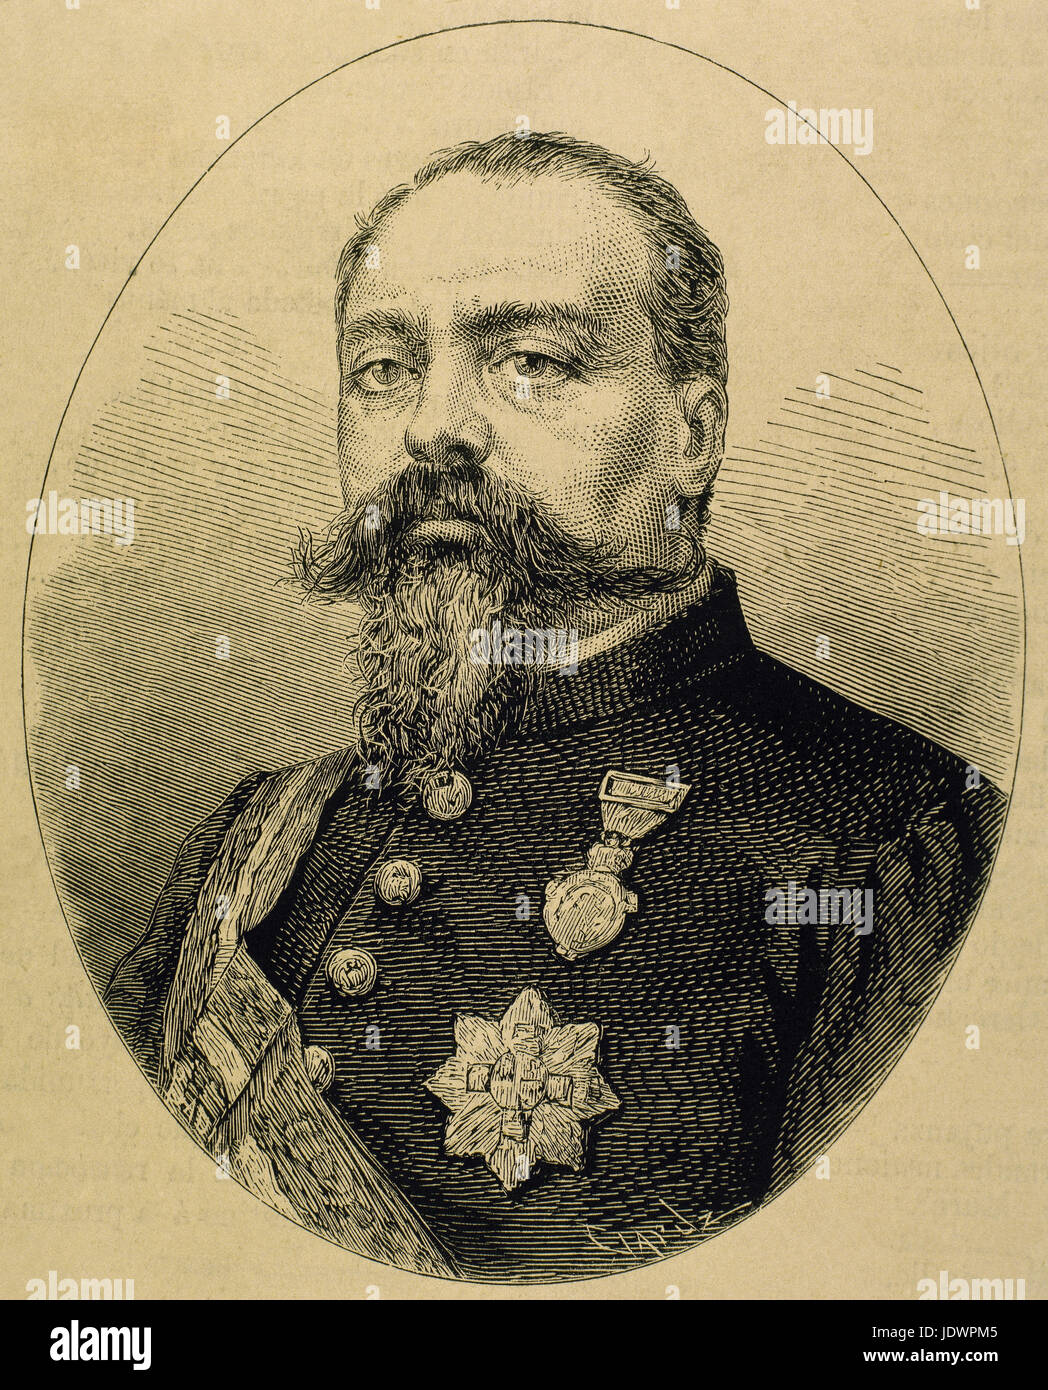 Joaquin Peralta Perez de Salcedo (1823-1876). Militärische und spanischer Politiker. Porträt. Kupferstich von Capuz. "La Ilustracion Espanola y Americana", 1876. Stockfoto